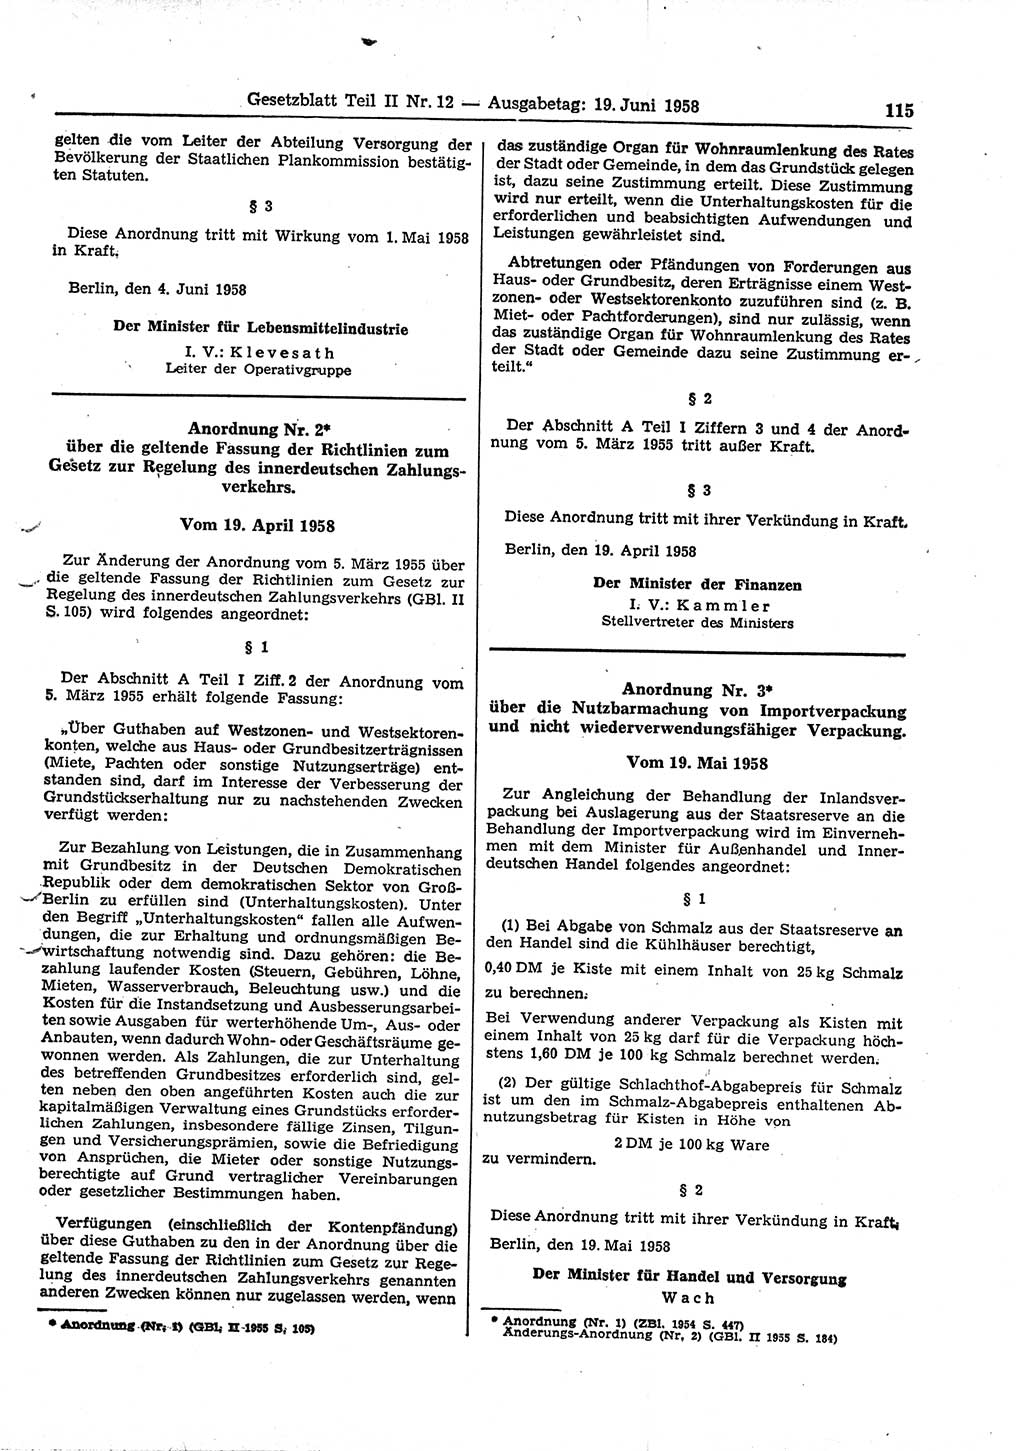 Gesetzblatt (GBl.) der Deutschen Demokratischen Republik (DDR) Teil ⅠⅠ 1958, Seite 115 (GBl. DDR ⅠⅠ 1958, S. 115)